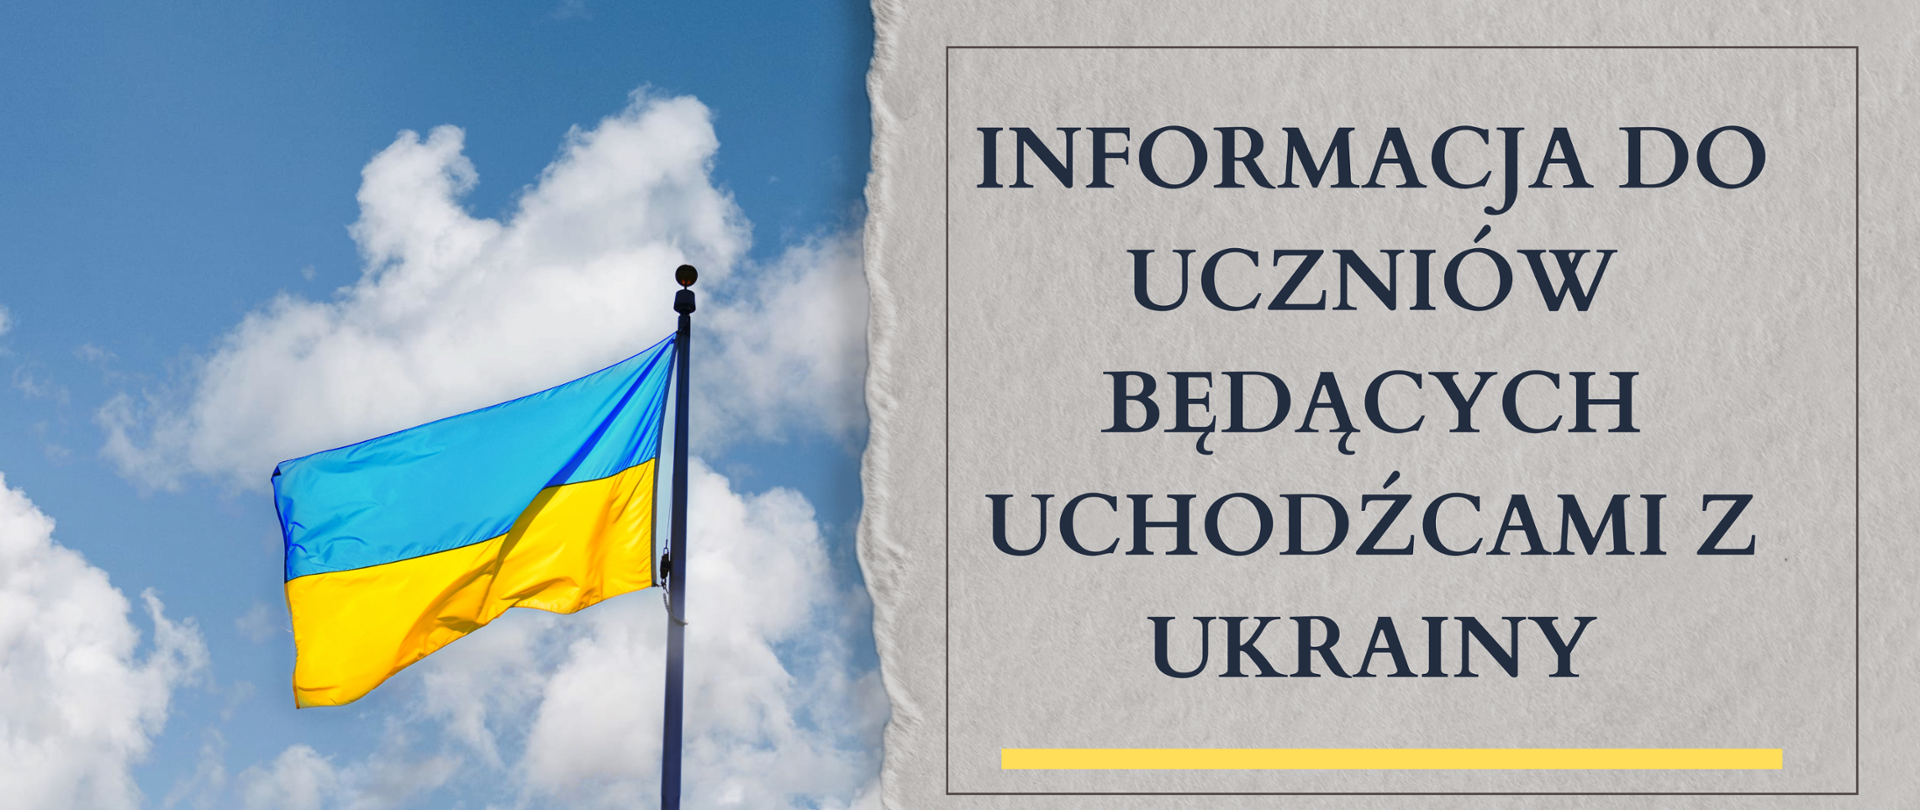 Baner ze zdjęciem flagi Ukrainy z prawej strony napis "INFORMACJA DO UCZNIÓW BĘDĄCYCH UCHODŹCAMI Z UKRAINY"